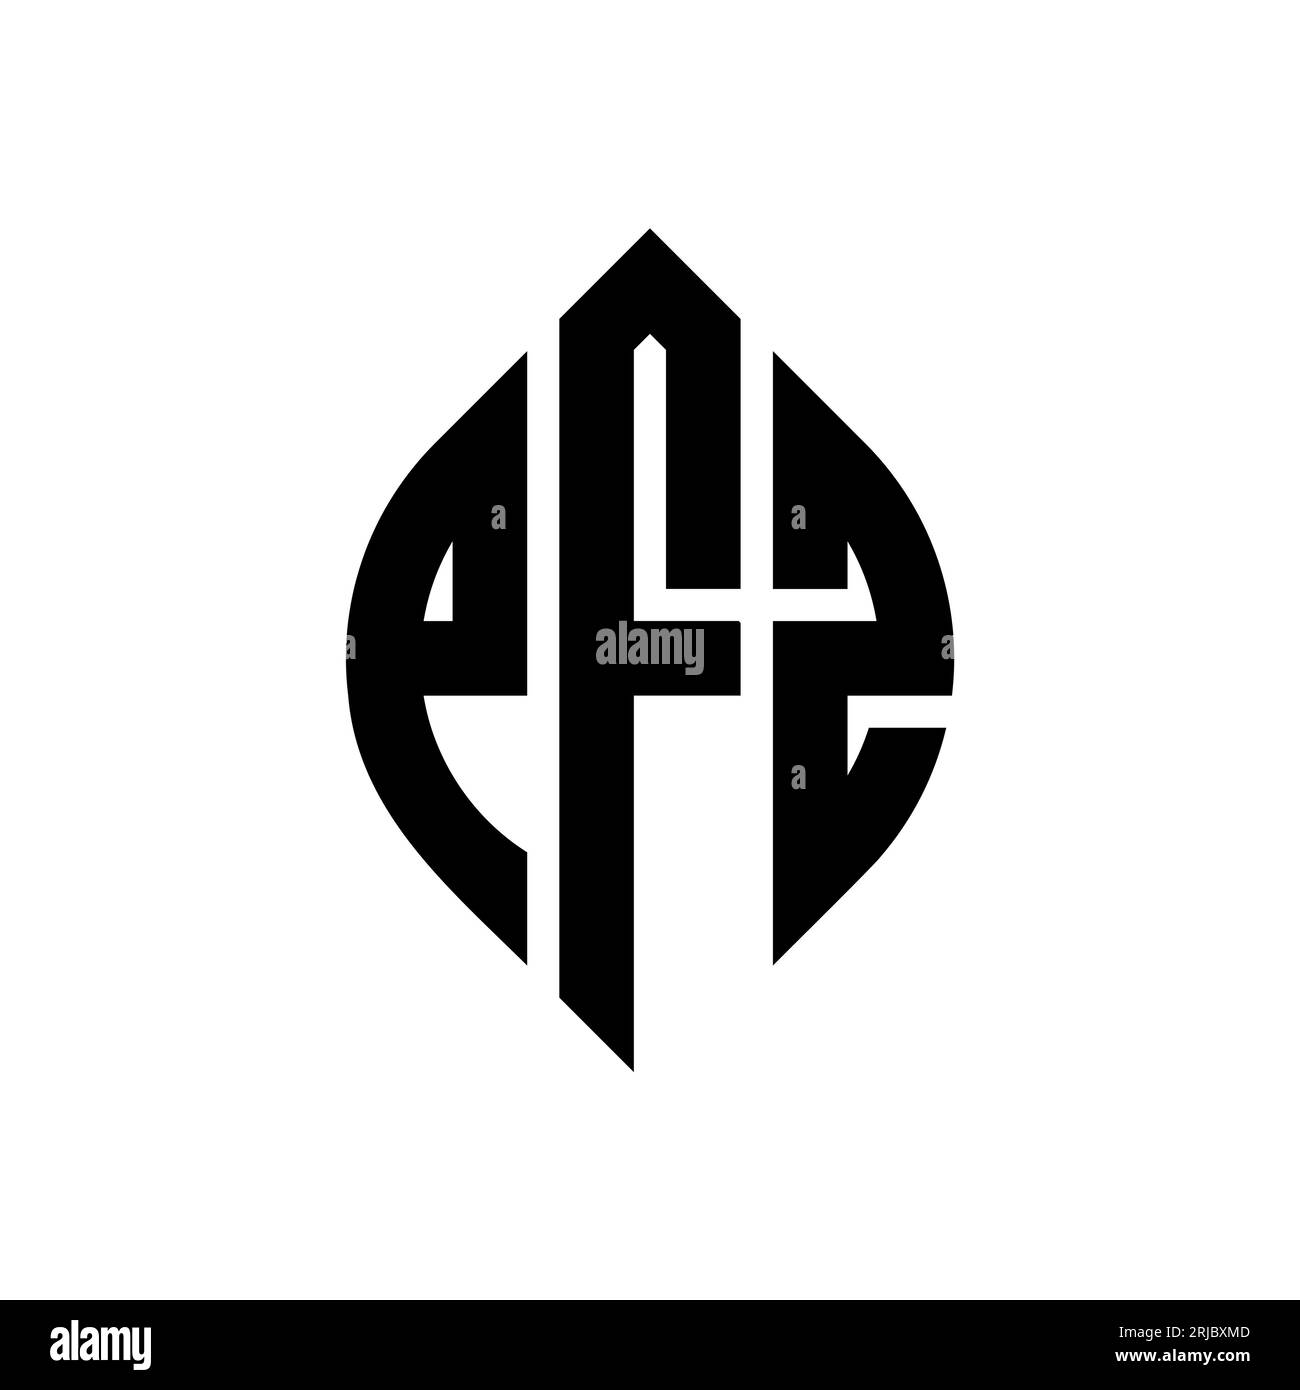 PFZ-Logodesign mit kreisförmigem Buchstaben und Ellipsenform. PFZ-Ellipsenbuchstaben im typografischen Stil. Die drei Initialen bilden ein kreisförmiges Logo. PFZ CI Stock Vektor